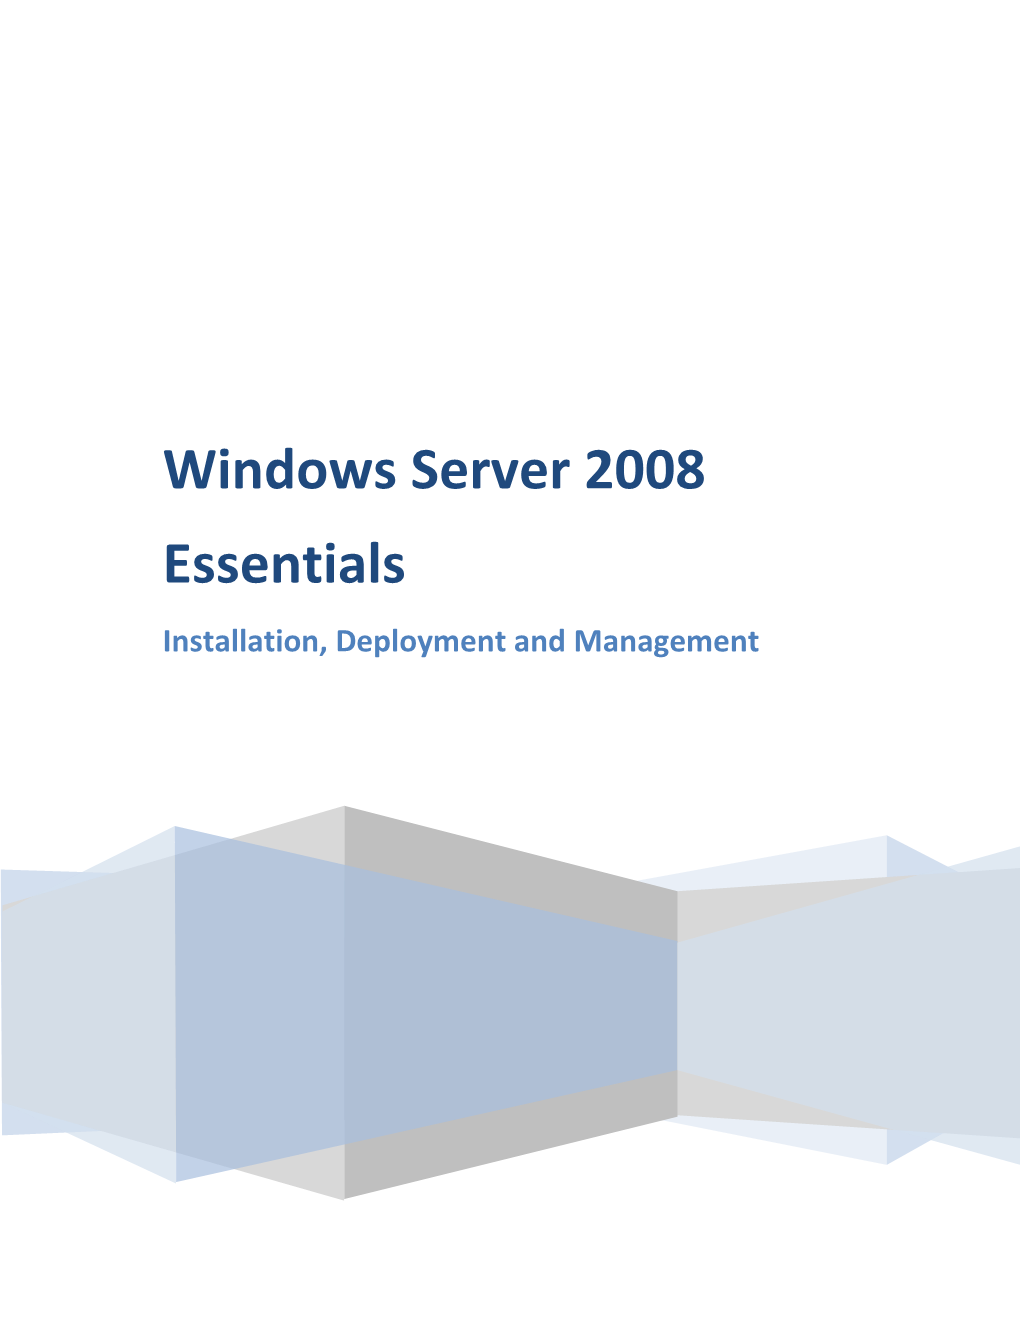 Windows Server 2008 Essentials Installation, Deployment and Management